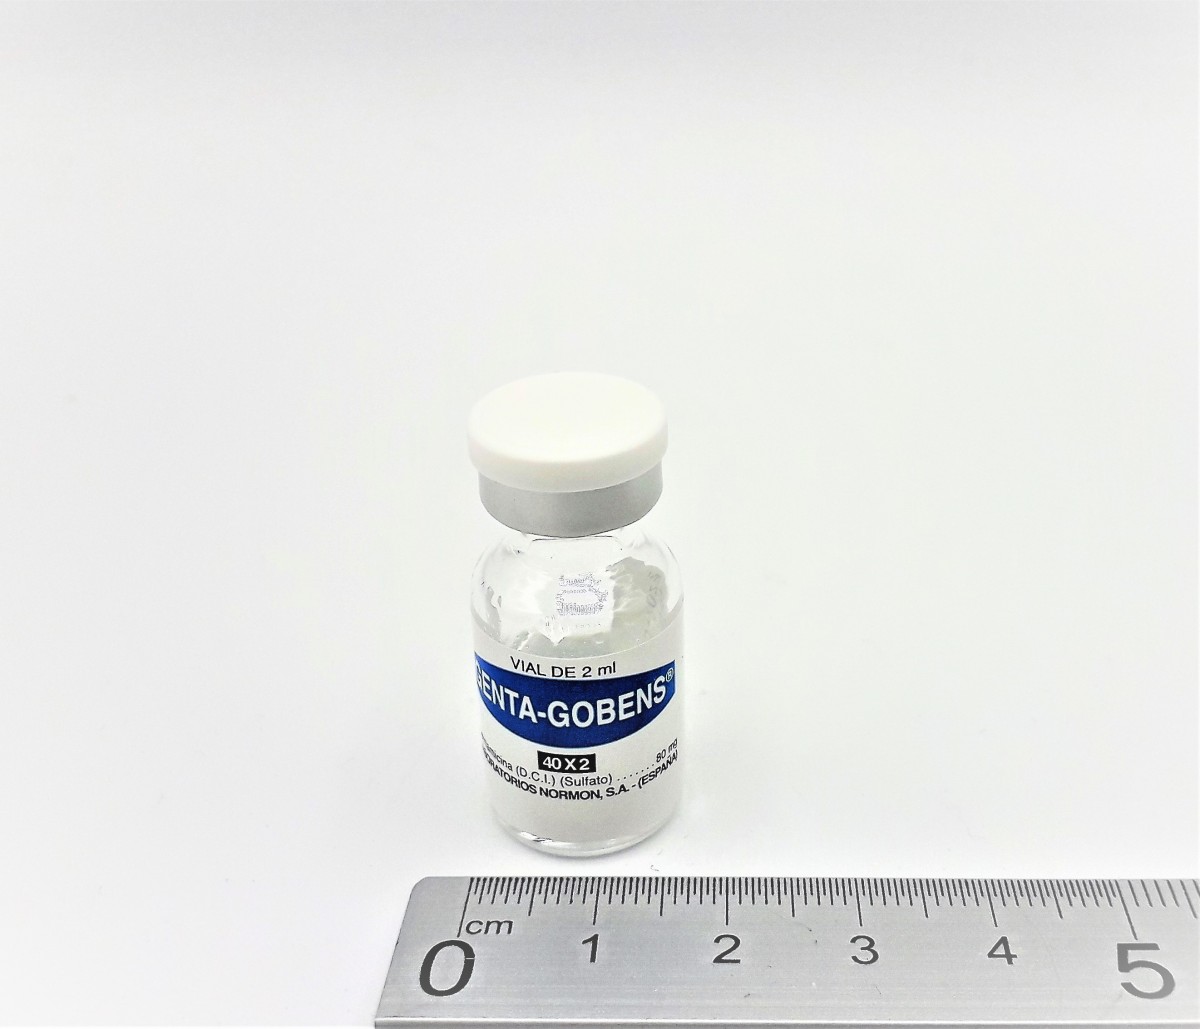 GENTA GOBENS 40 MG/ML SOLUCION INYECTABLE Y PARA PERFUSION, 1 vial de 2 ml fotografía de la forma farmacéutica.